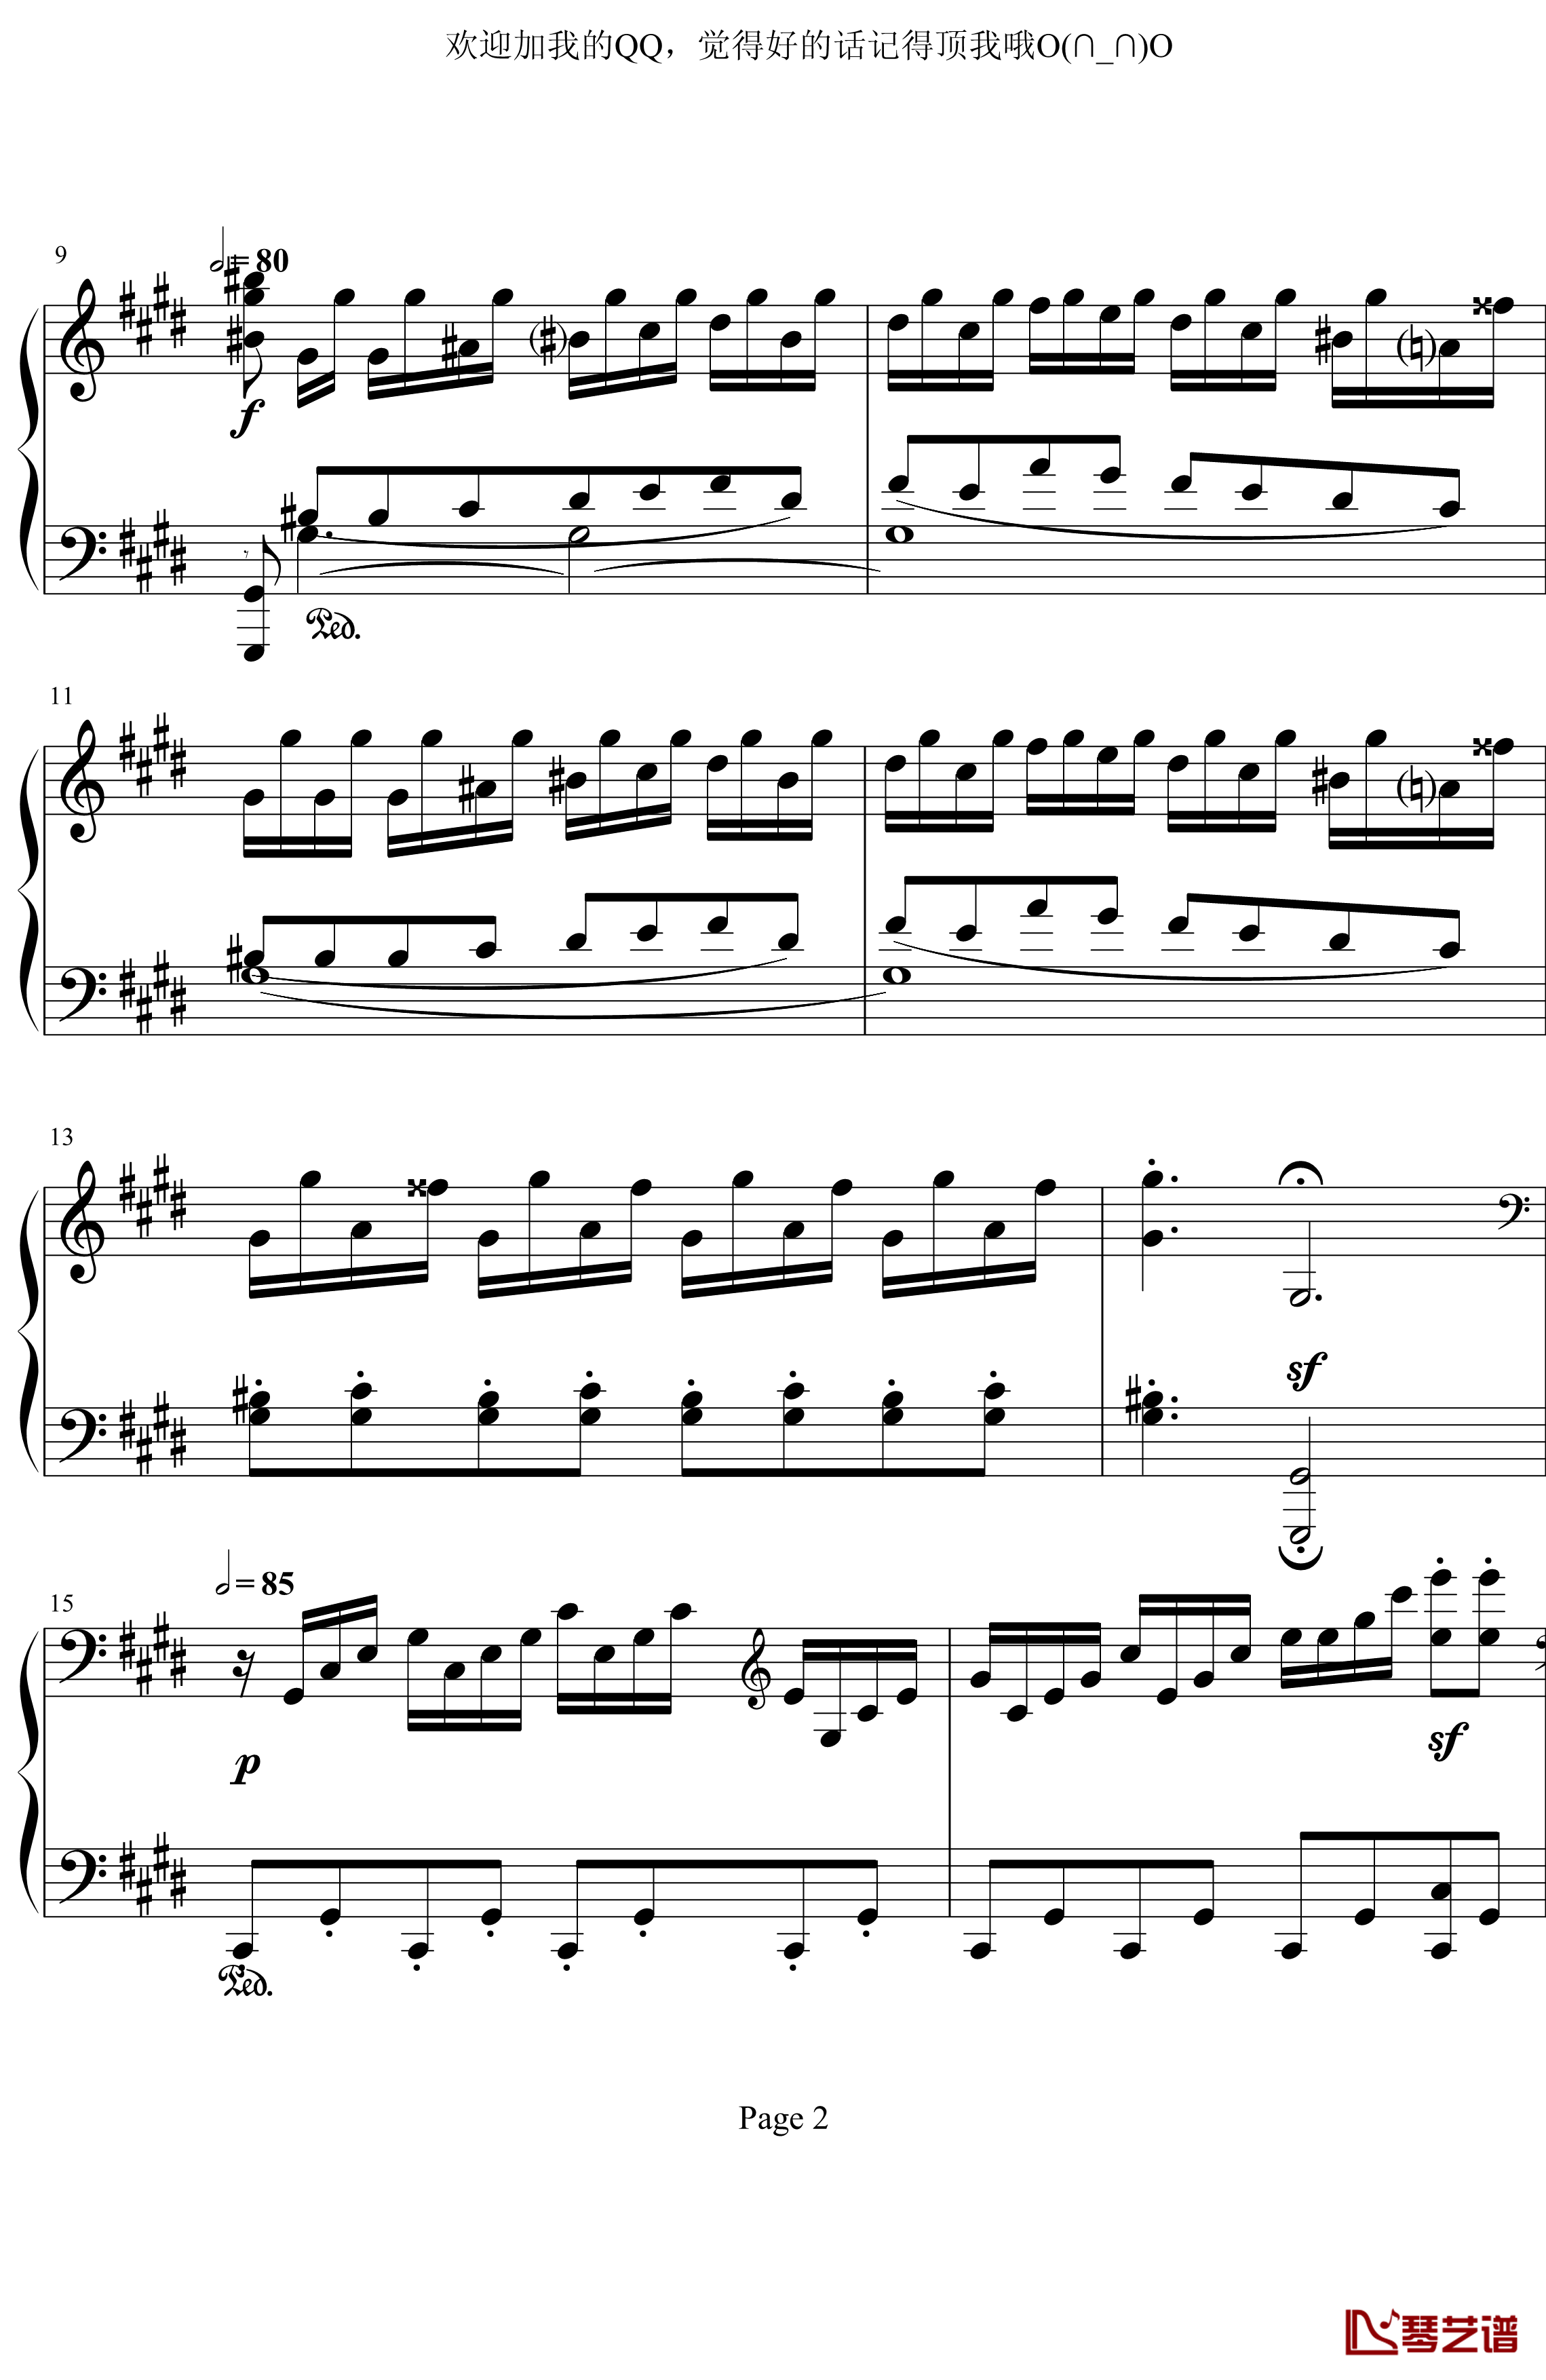 月光奏鸣曲第三乐章钢琴谱-贝多芬-beethoven2